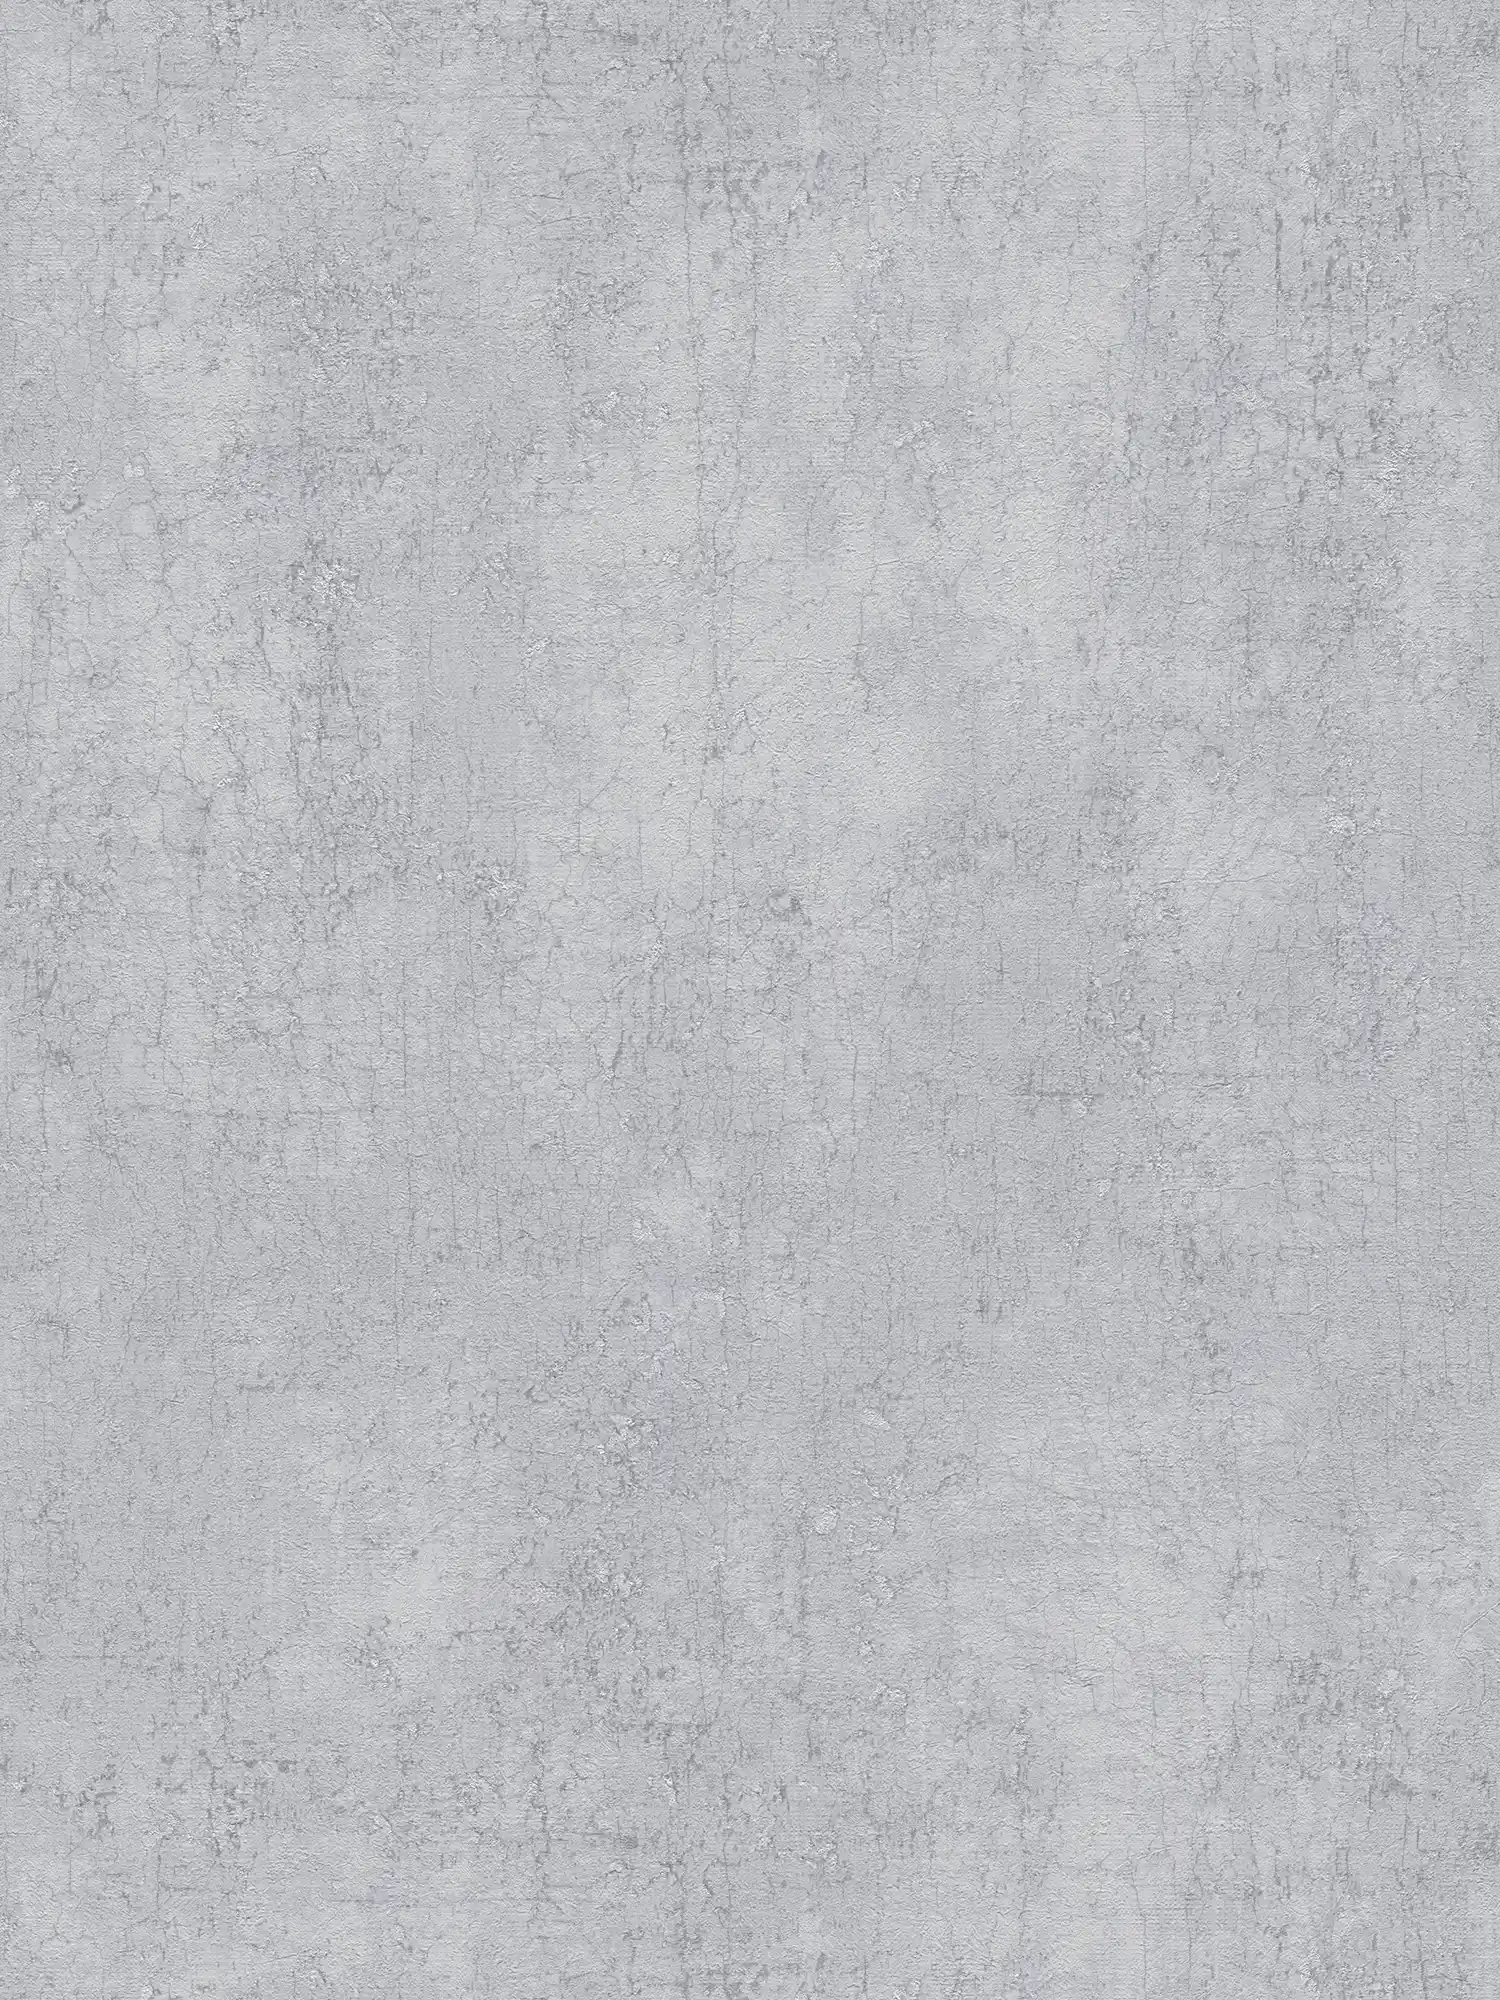 Papier peint aspect plâtre gris pierre avec accents argentés - gris, métallique
